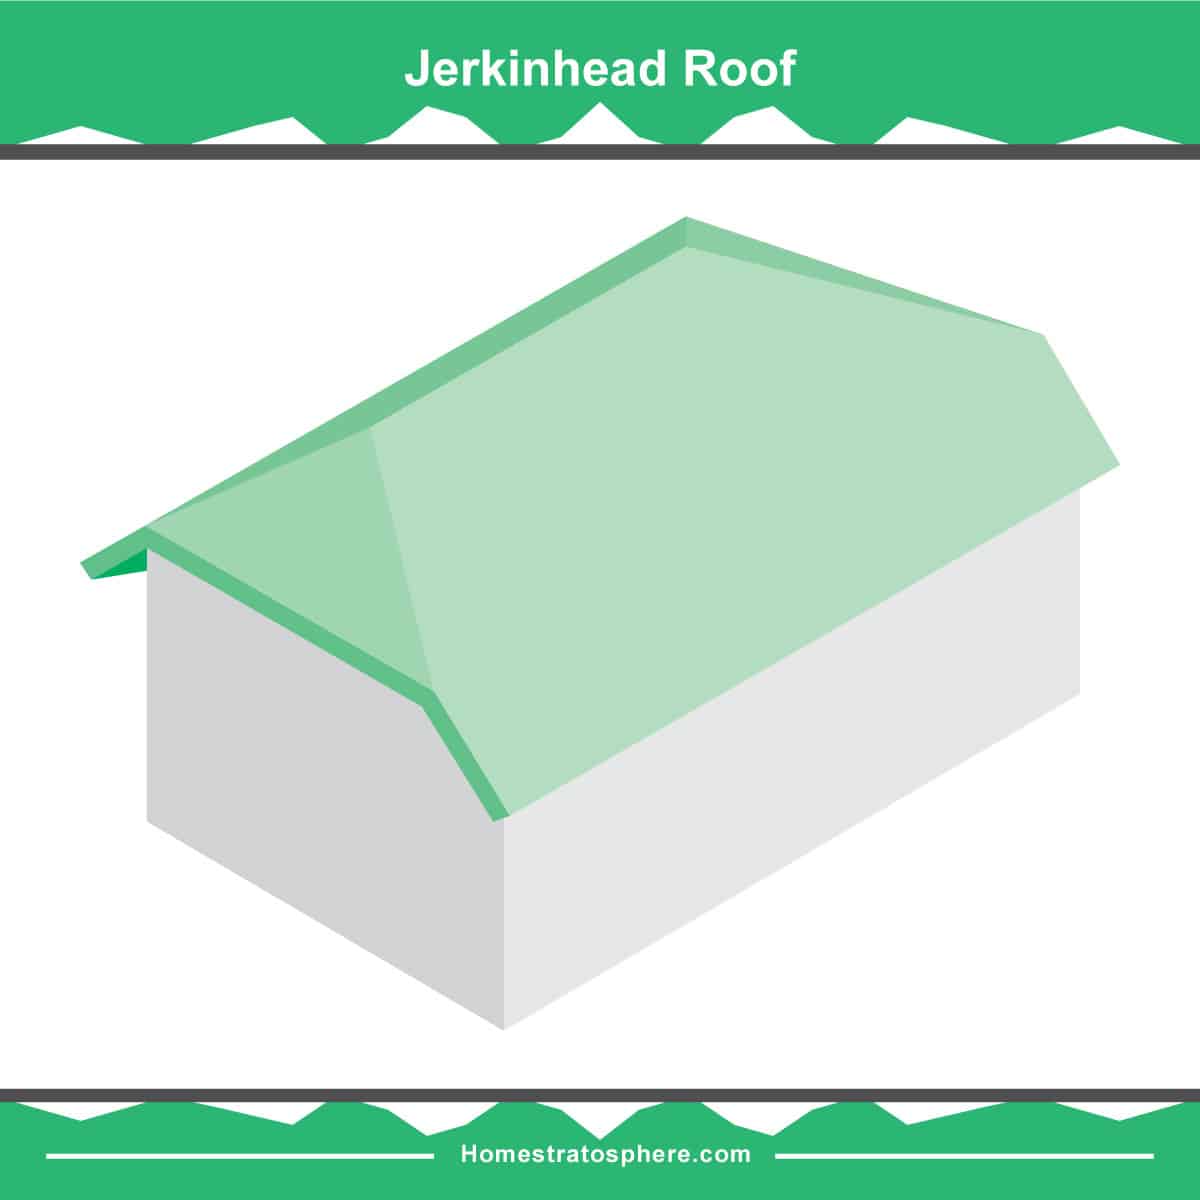 Jerkinhead屋顶屋顶图